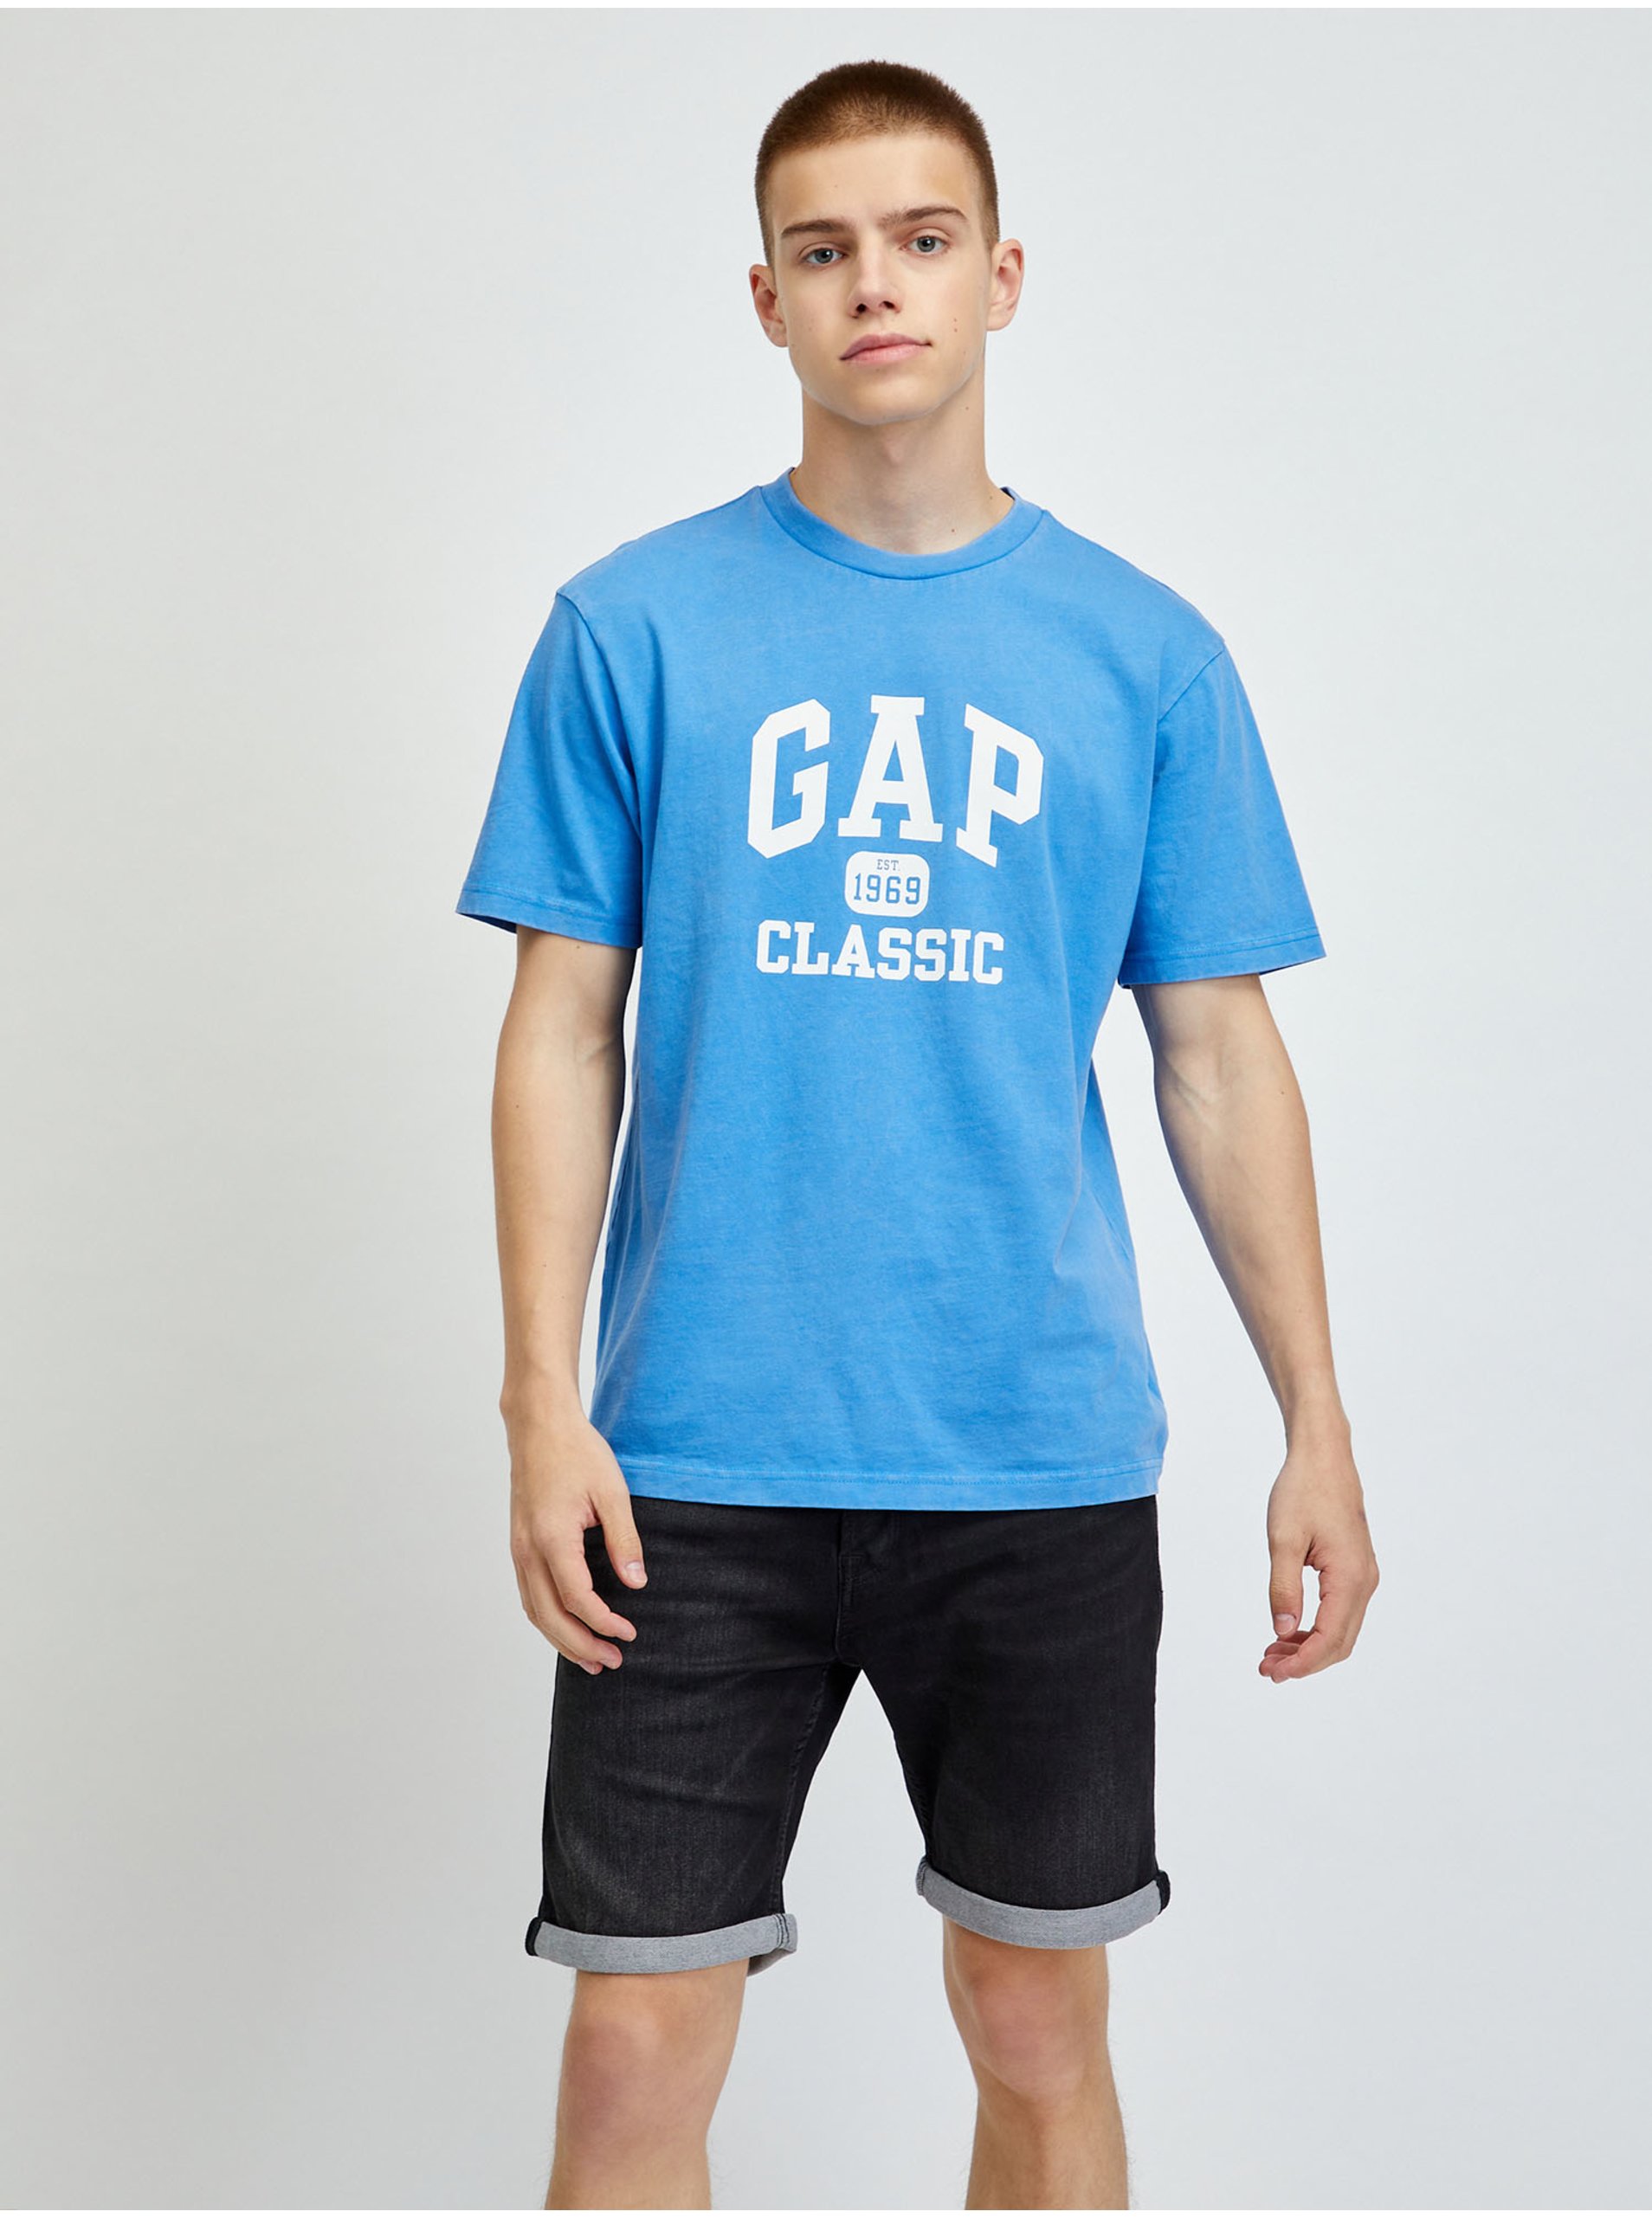 Levně Modré pánské tričko logo GAP 1969 Classic organic